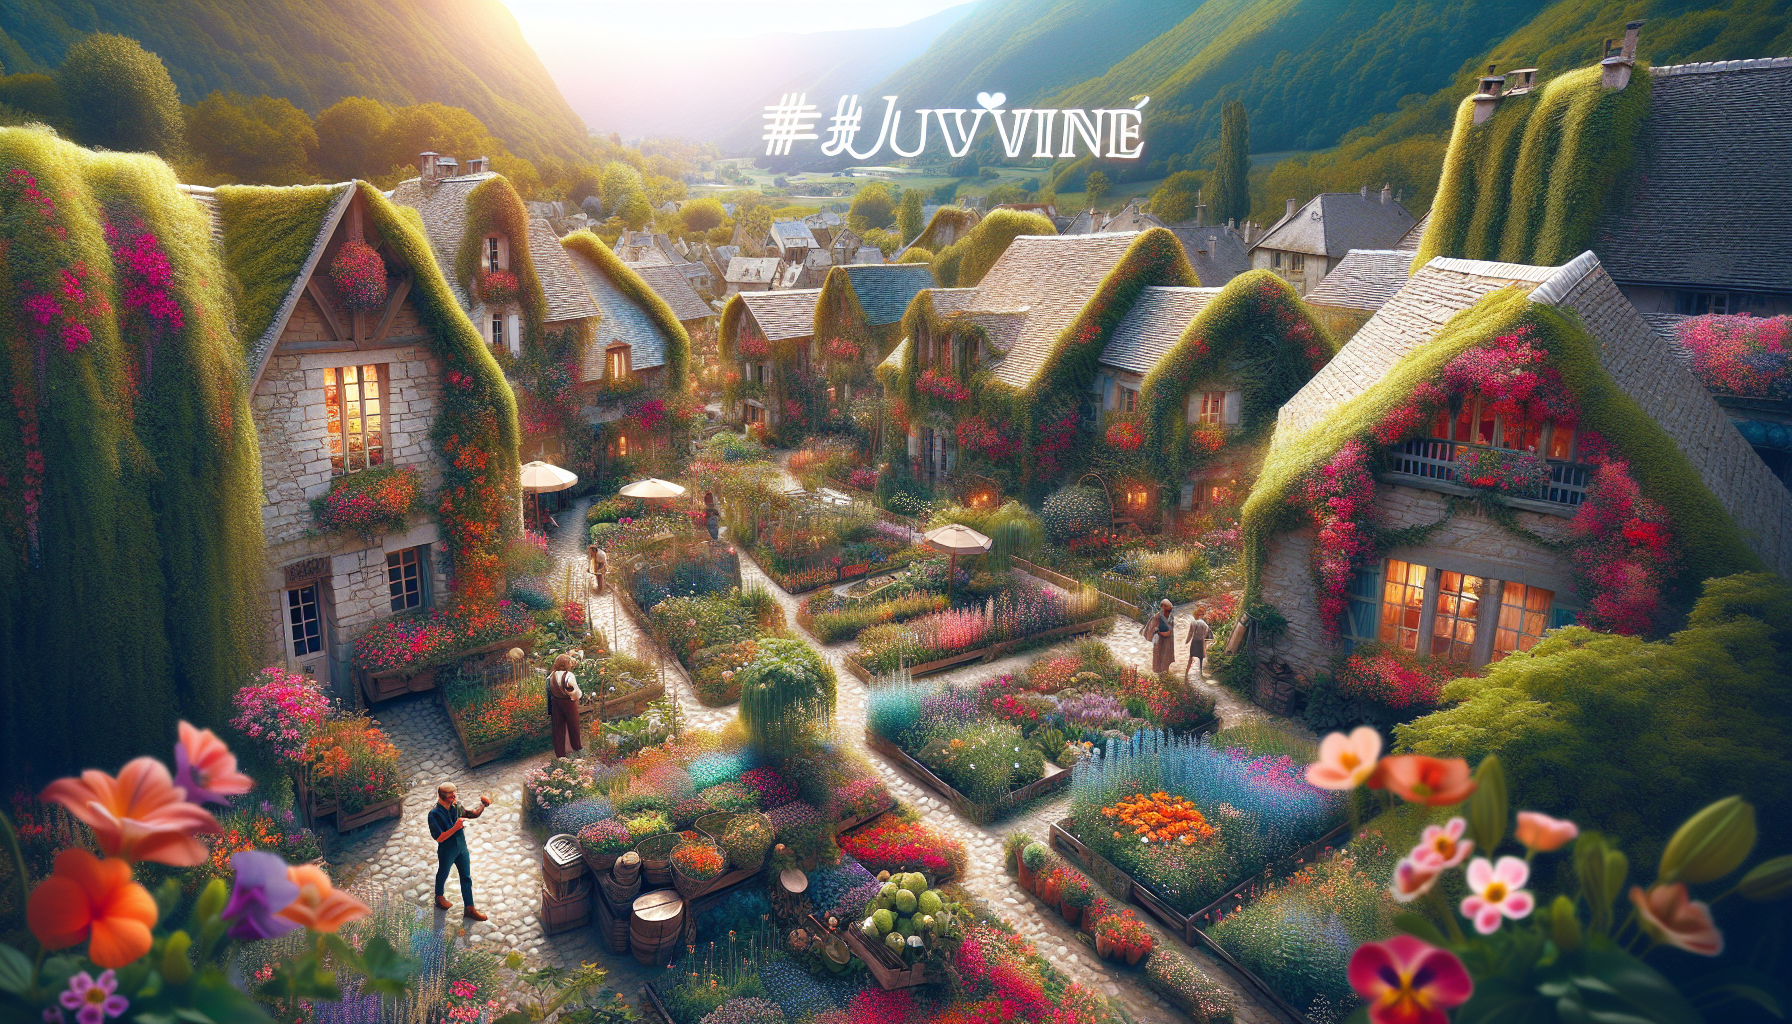 découvrez comment juvigné entretient son label de « village fleuri » grâce à des journées de jardinage et sa passion pour la nature.